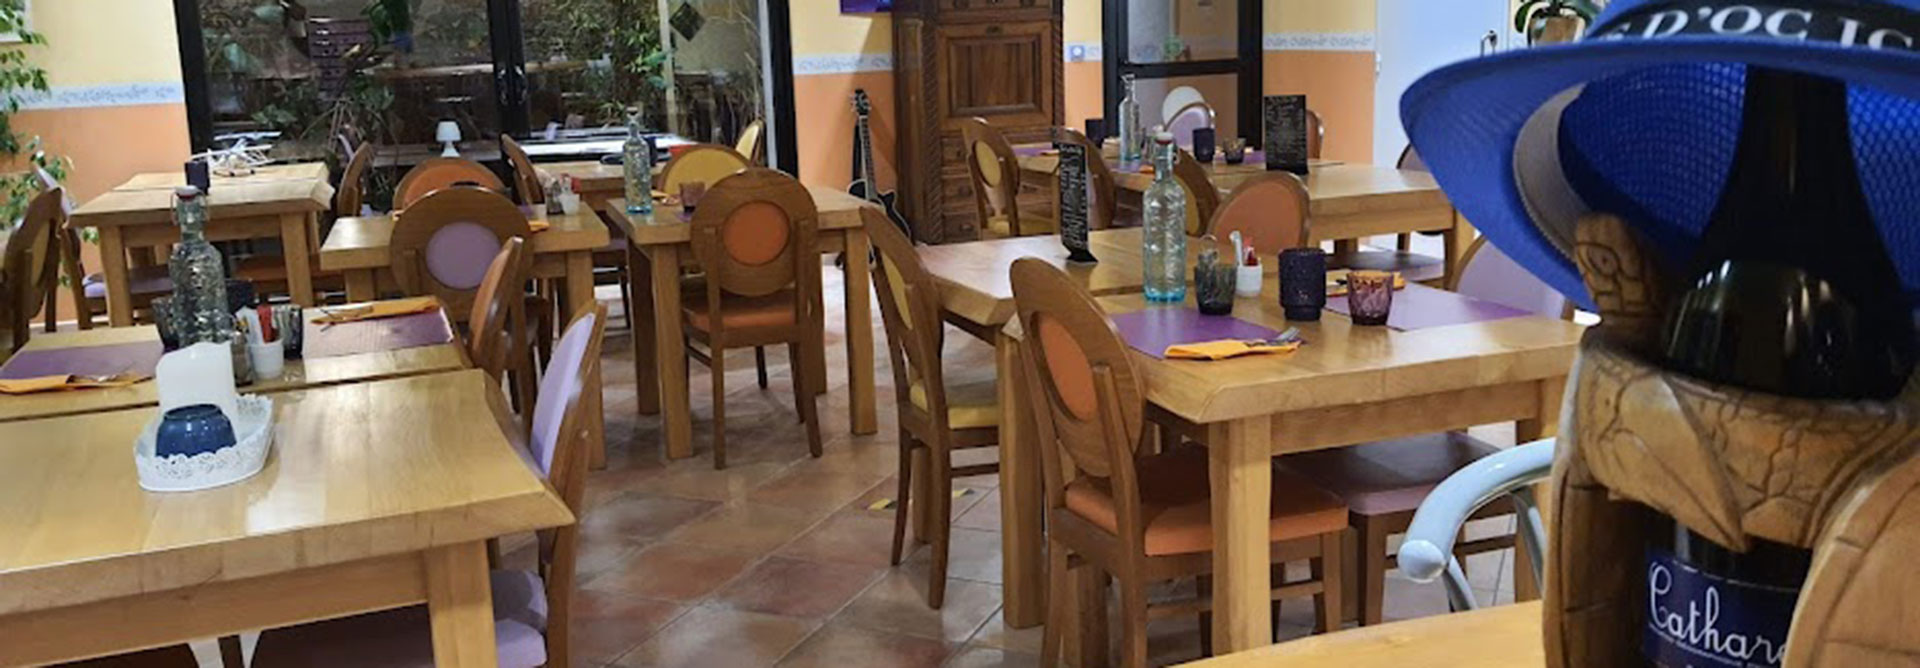 La salle du restaurant le Galley du camping dans l'Aude l'Escale Occitane